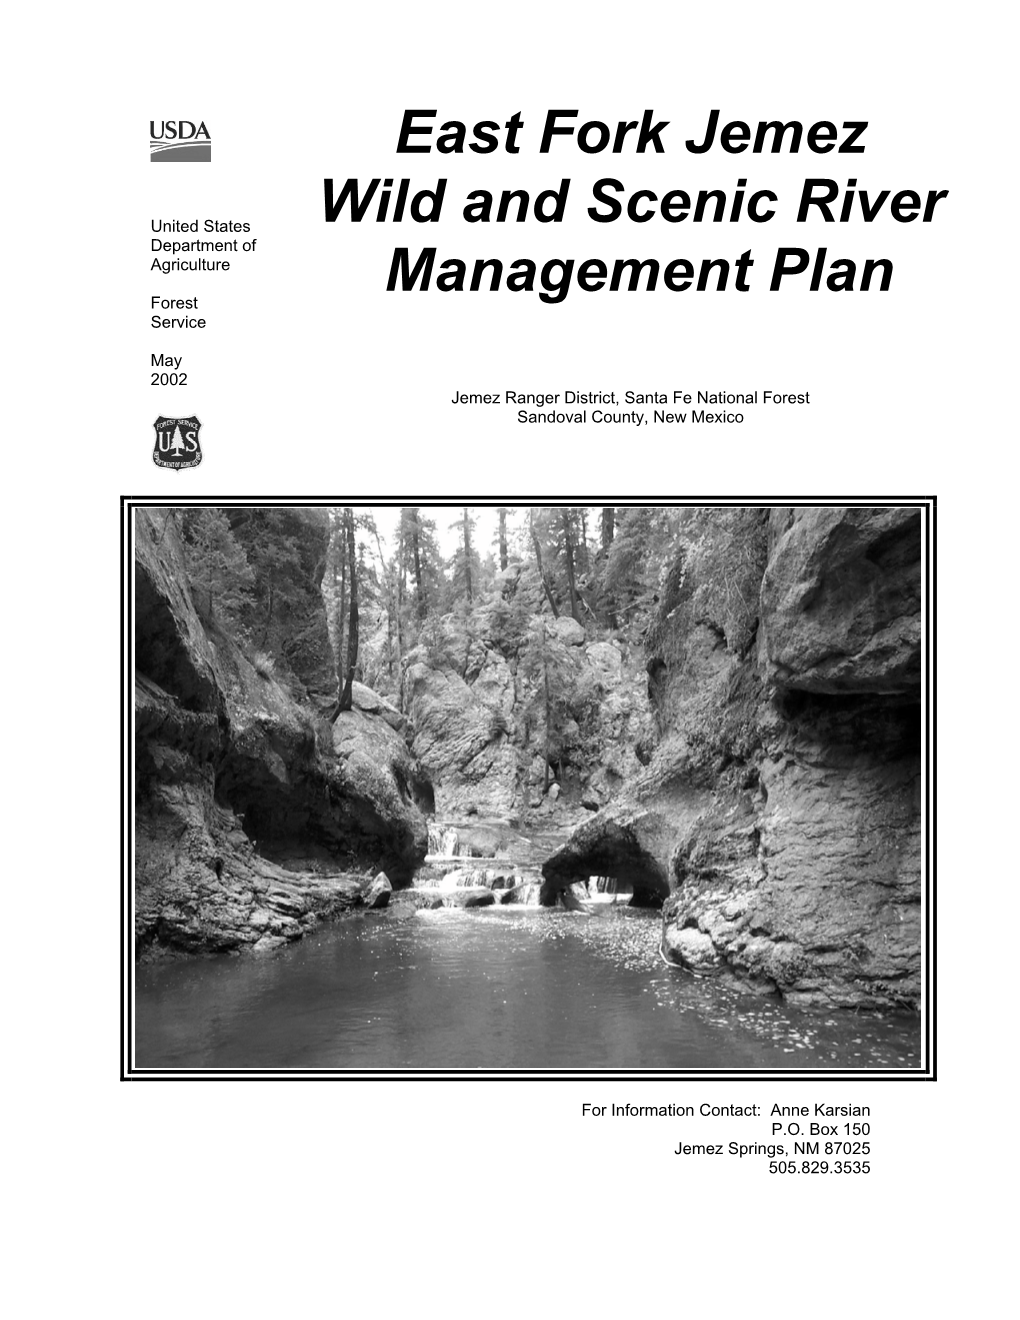 Jemez River Management Plan